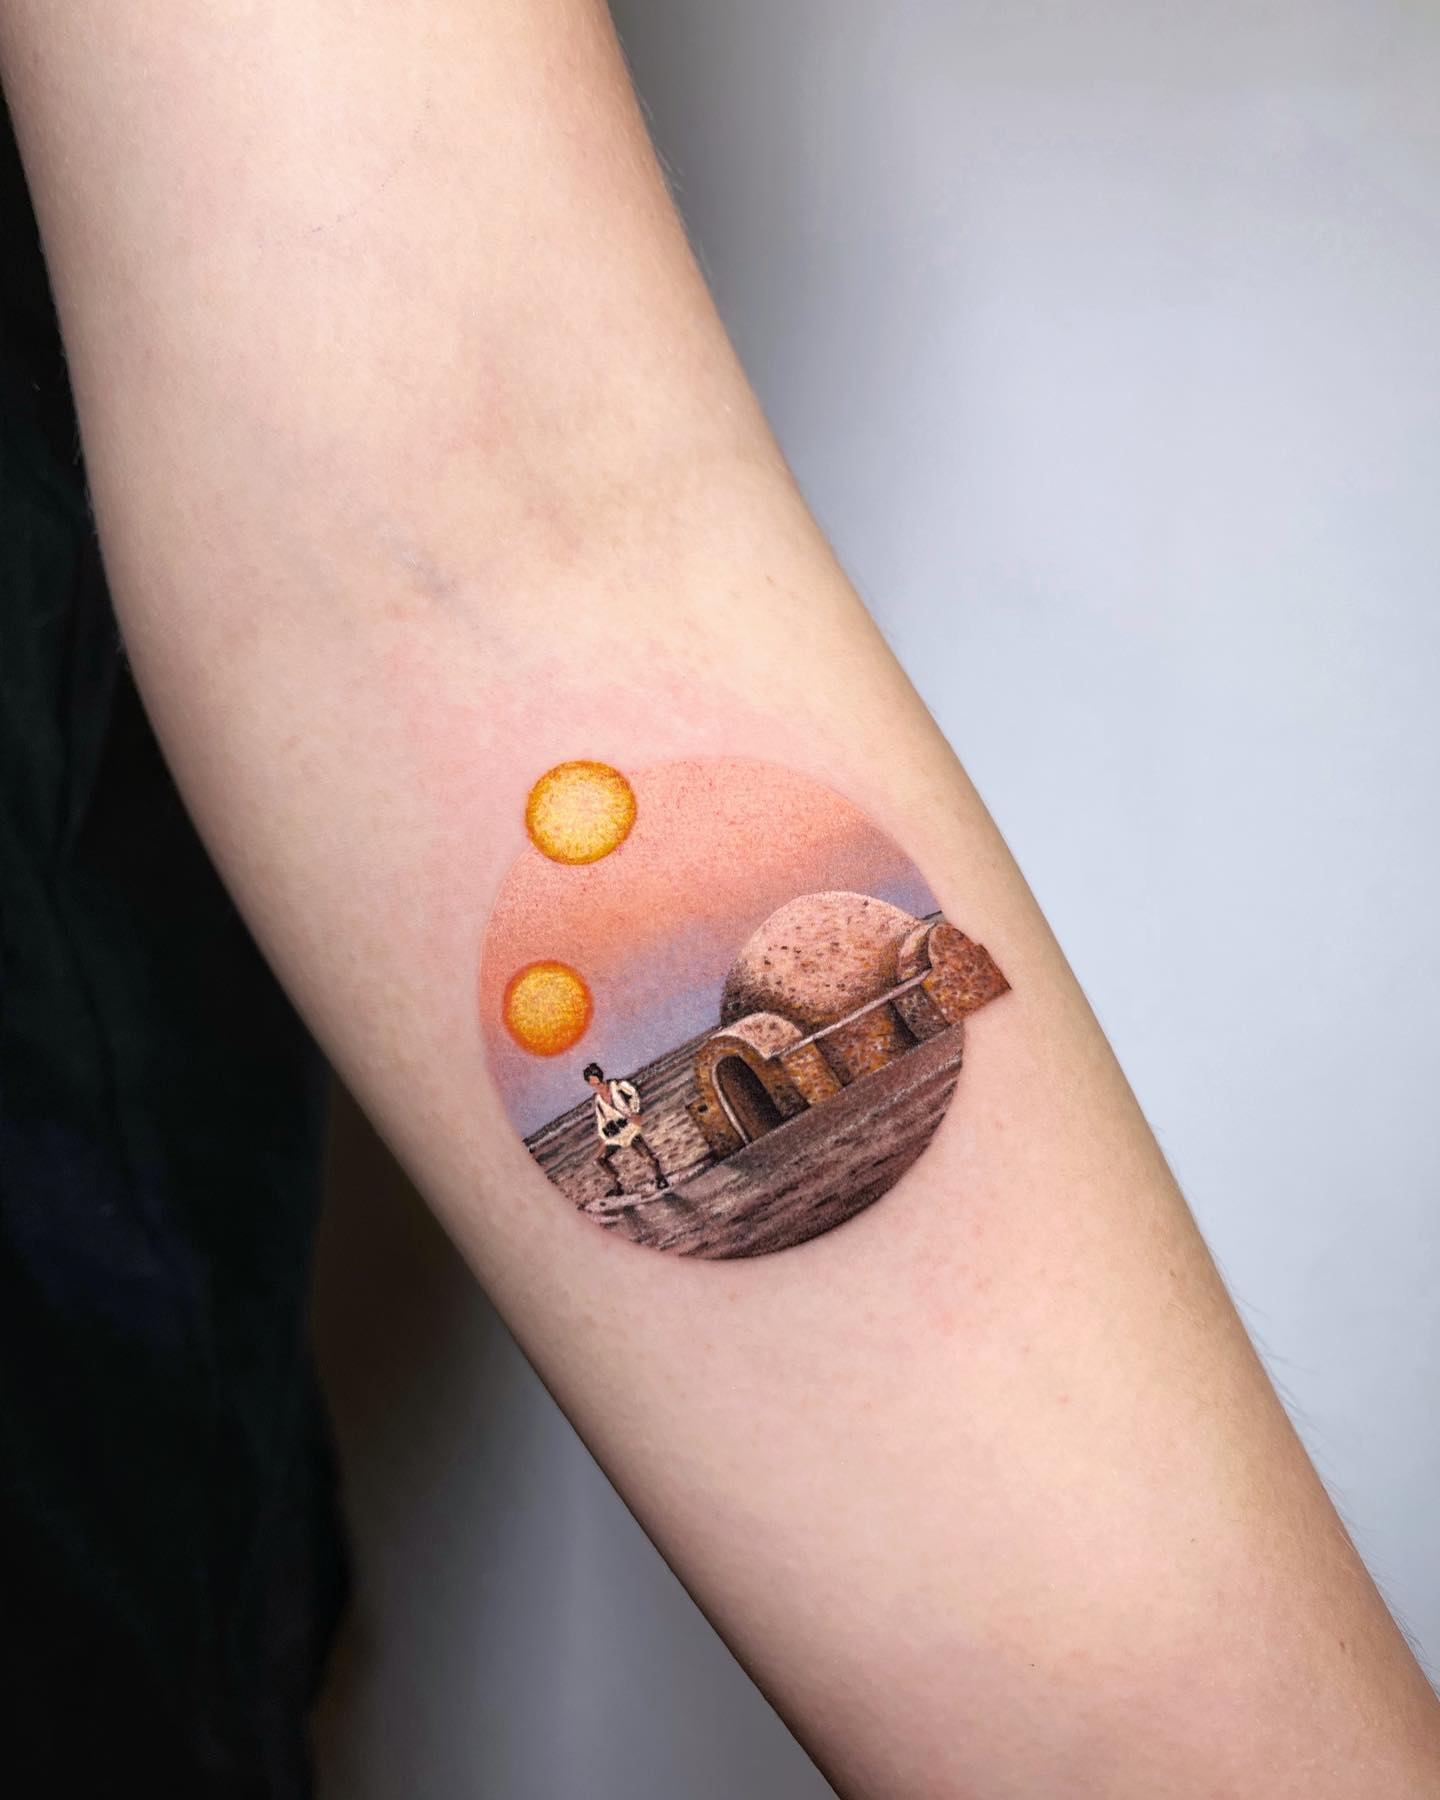 Tatuaje inspirado en viajes